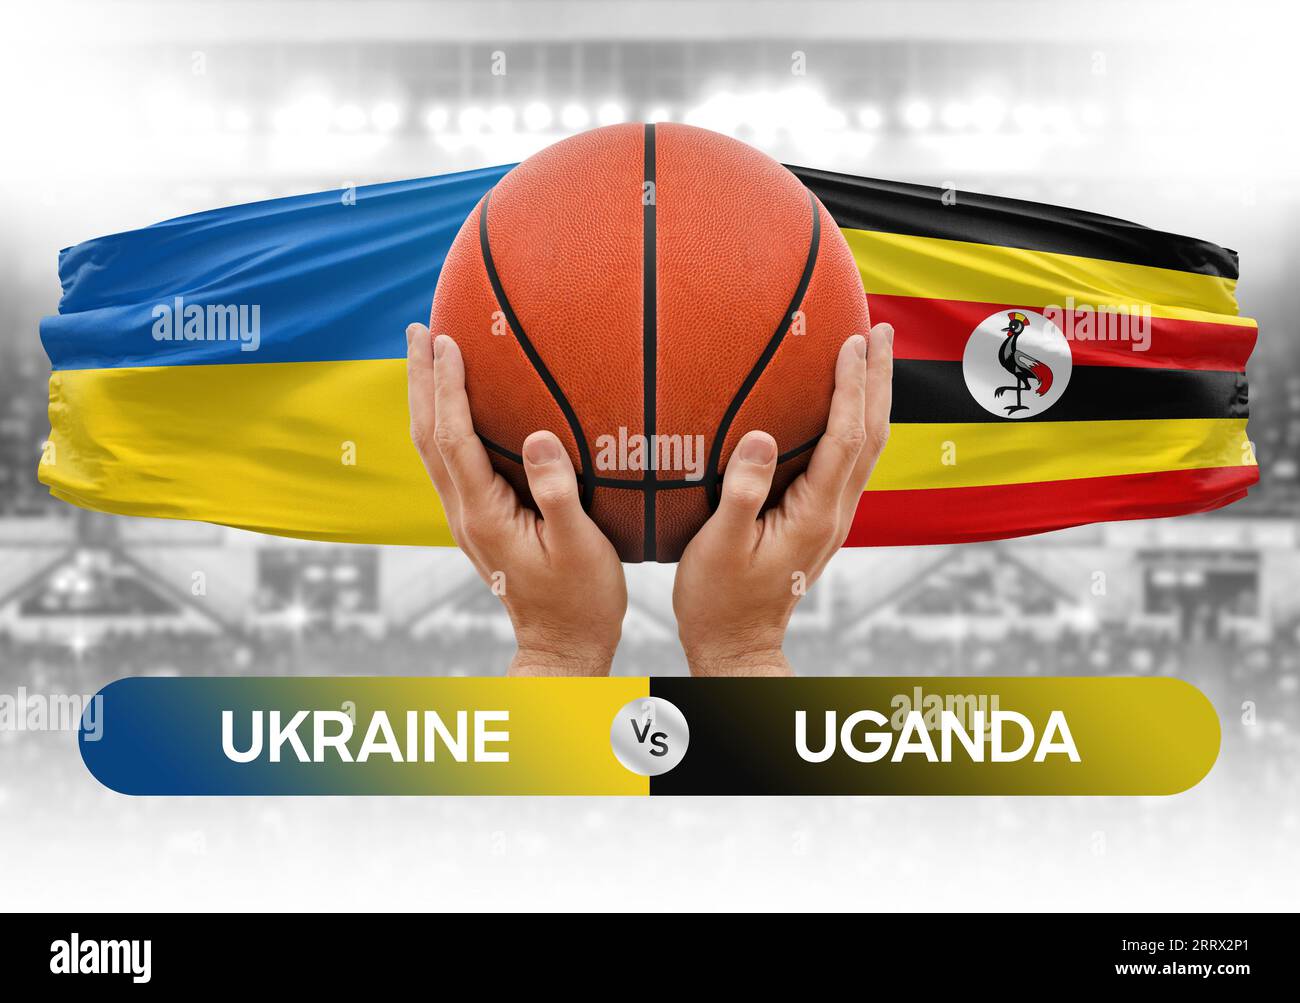 Ukraine gegen Uganda Basketball-Nationalmannschaften Basketballspiel Wettbewerb Cup Konzept Bild Stockfoto